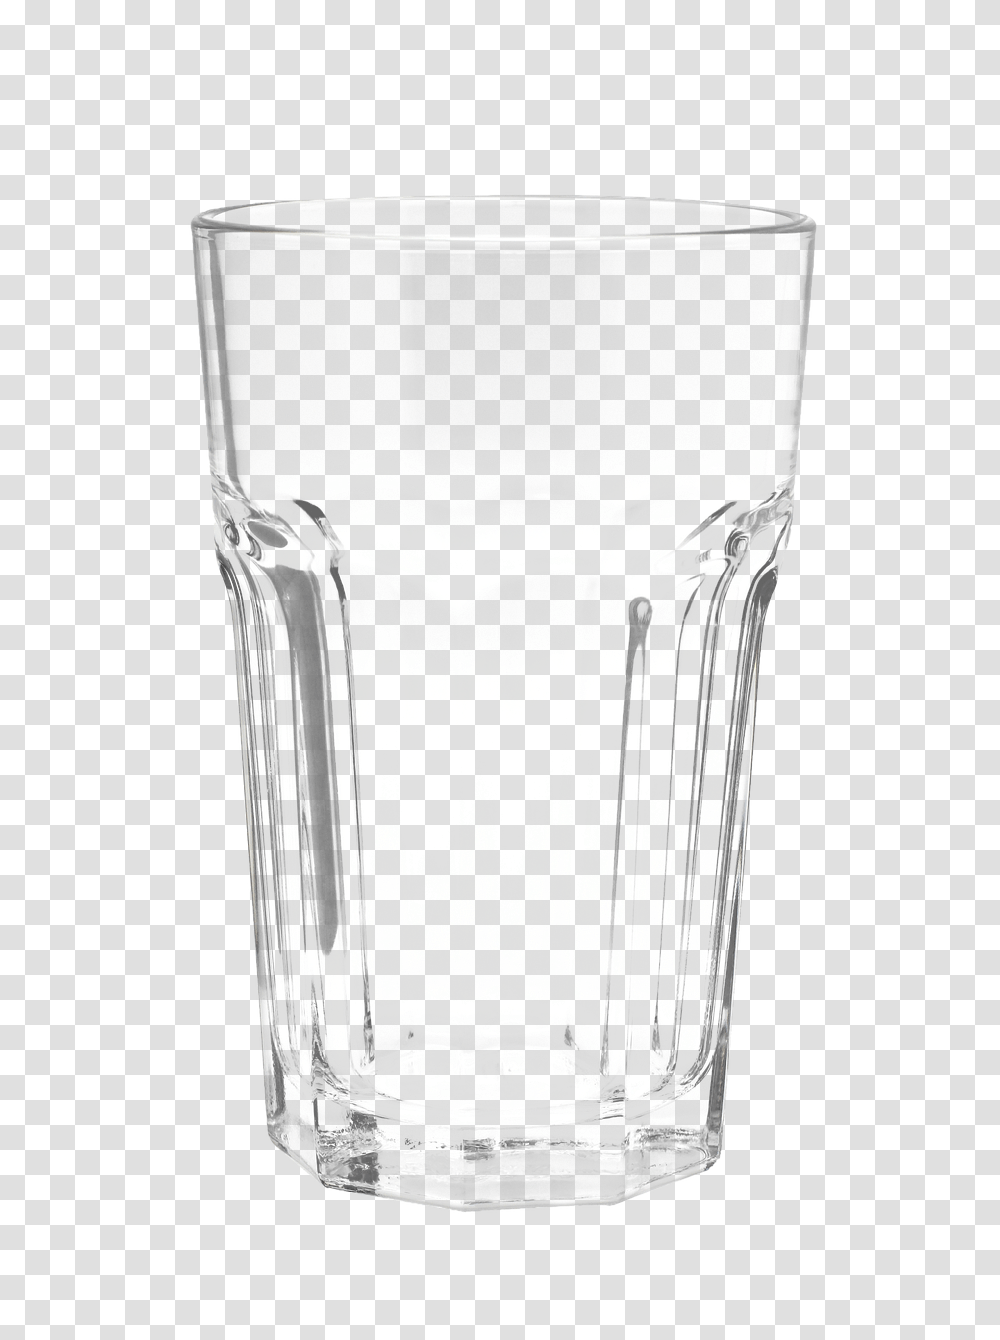 Water Glass Pic Vaso Transparente, Bottle, Goblet, Jar, Shaker Transparent Png